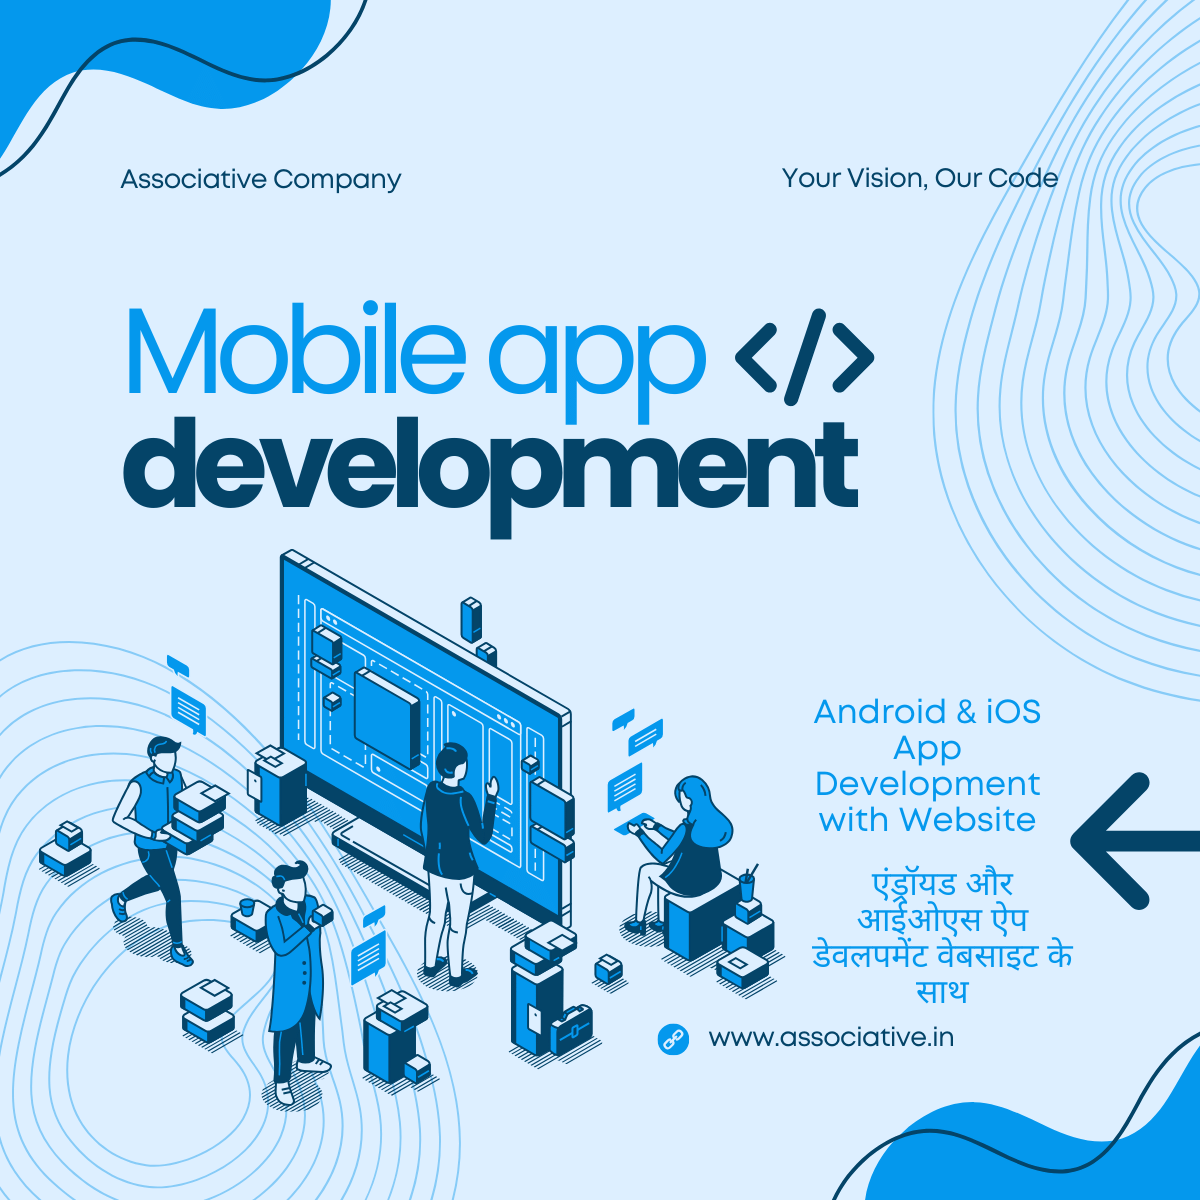 Android & iOS App Development with Website एंड्रॉयड और आईओएस ऐप डेवलपमेंट वेबसाइट के साथ